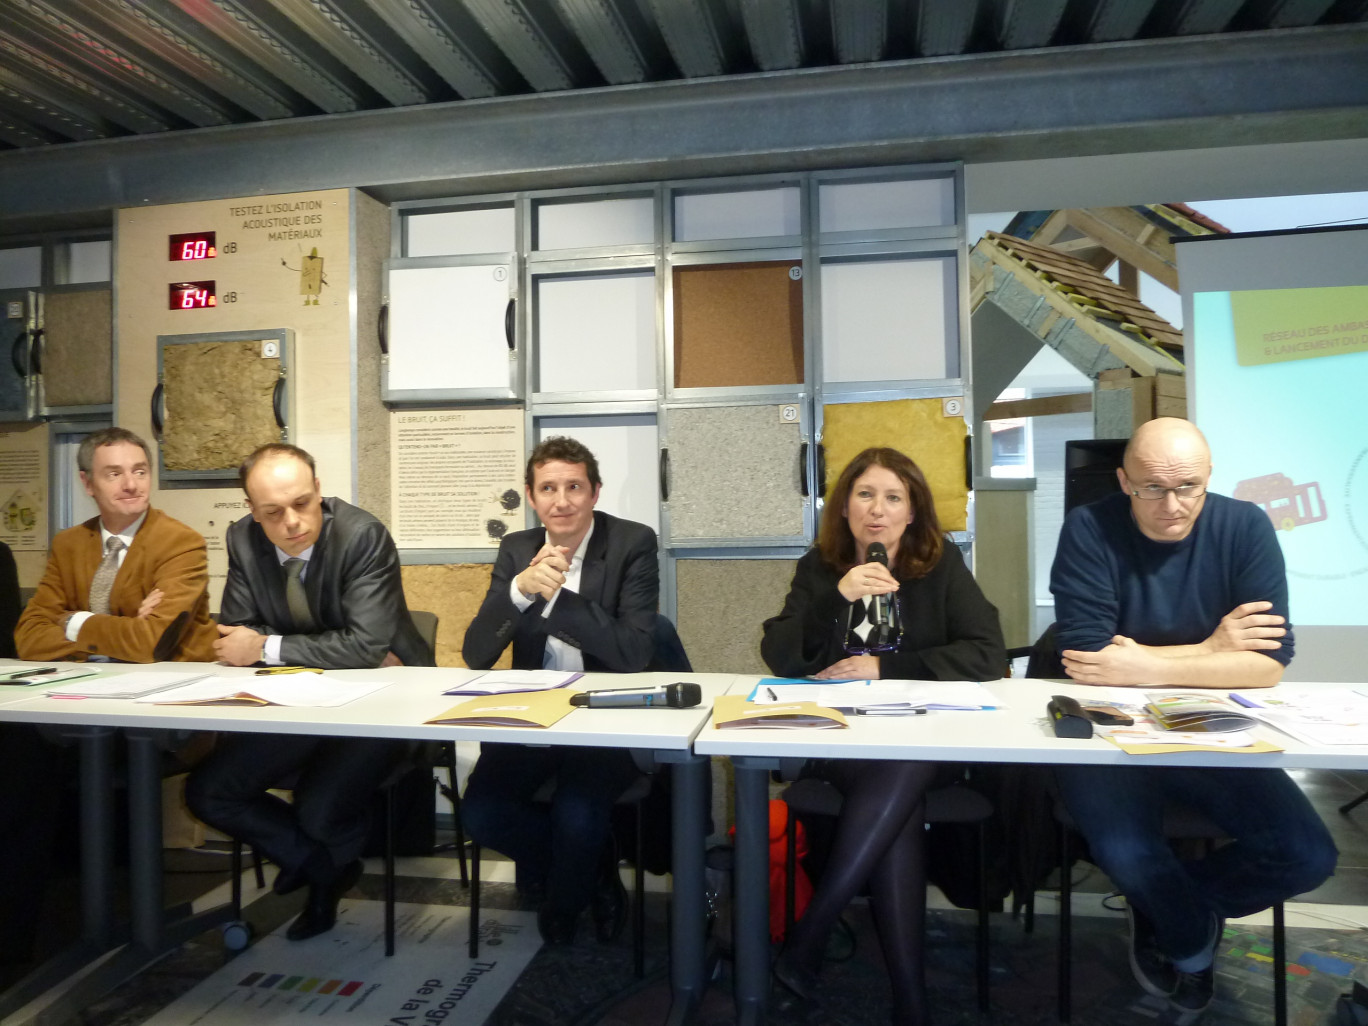 Les représentants de l'Ademe, la DREAL, la ville de Lille, du Conseil régional et du Cerdd annonçant le déploiement de la deuxième génération des Ambassadeurs du Développement Durable et le lancement du DD Tour.